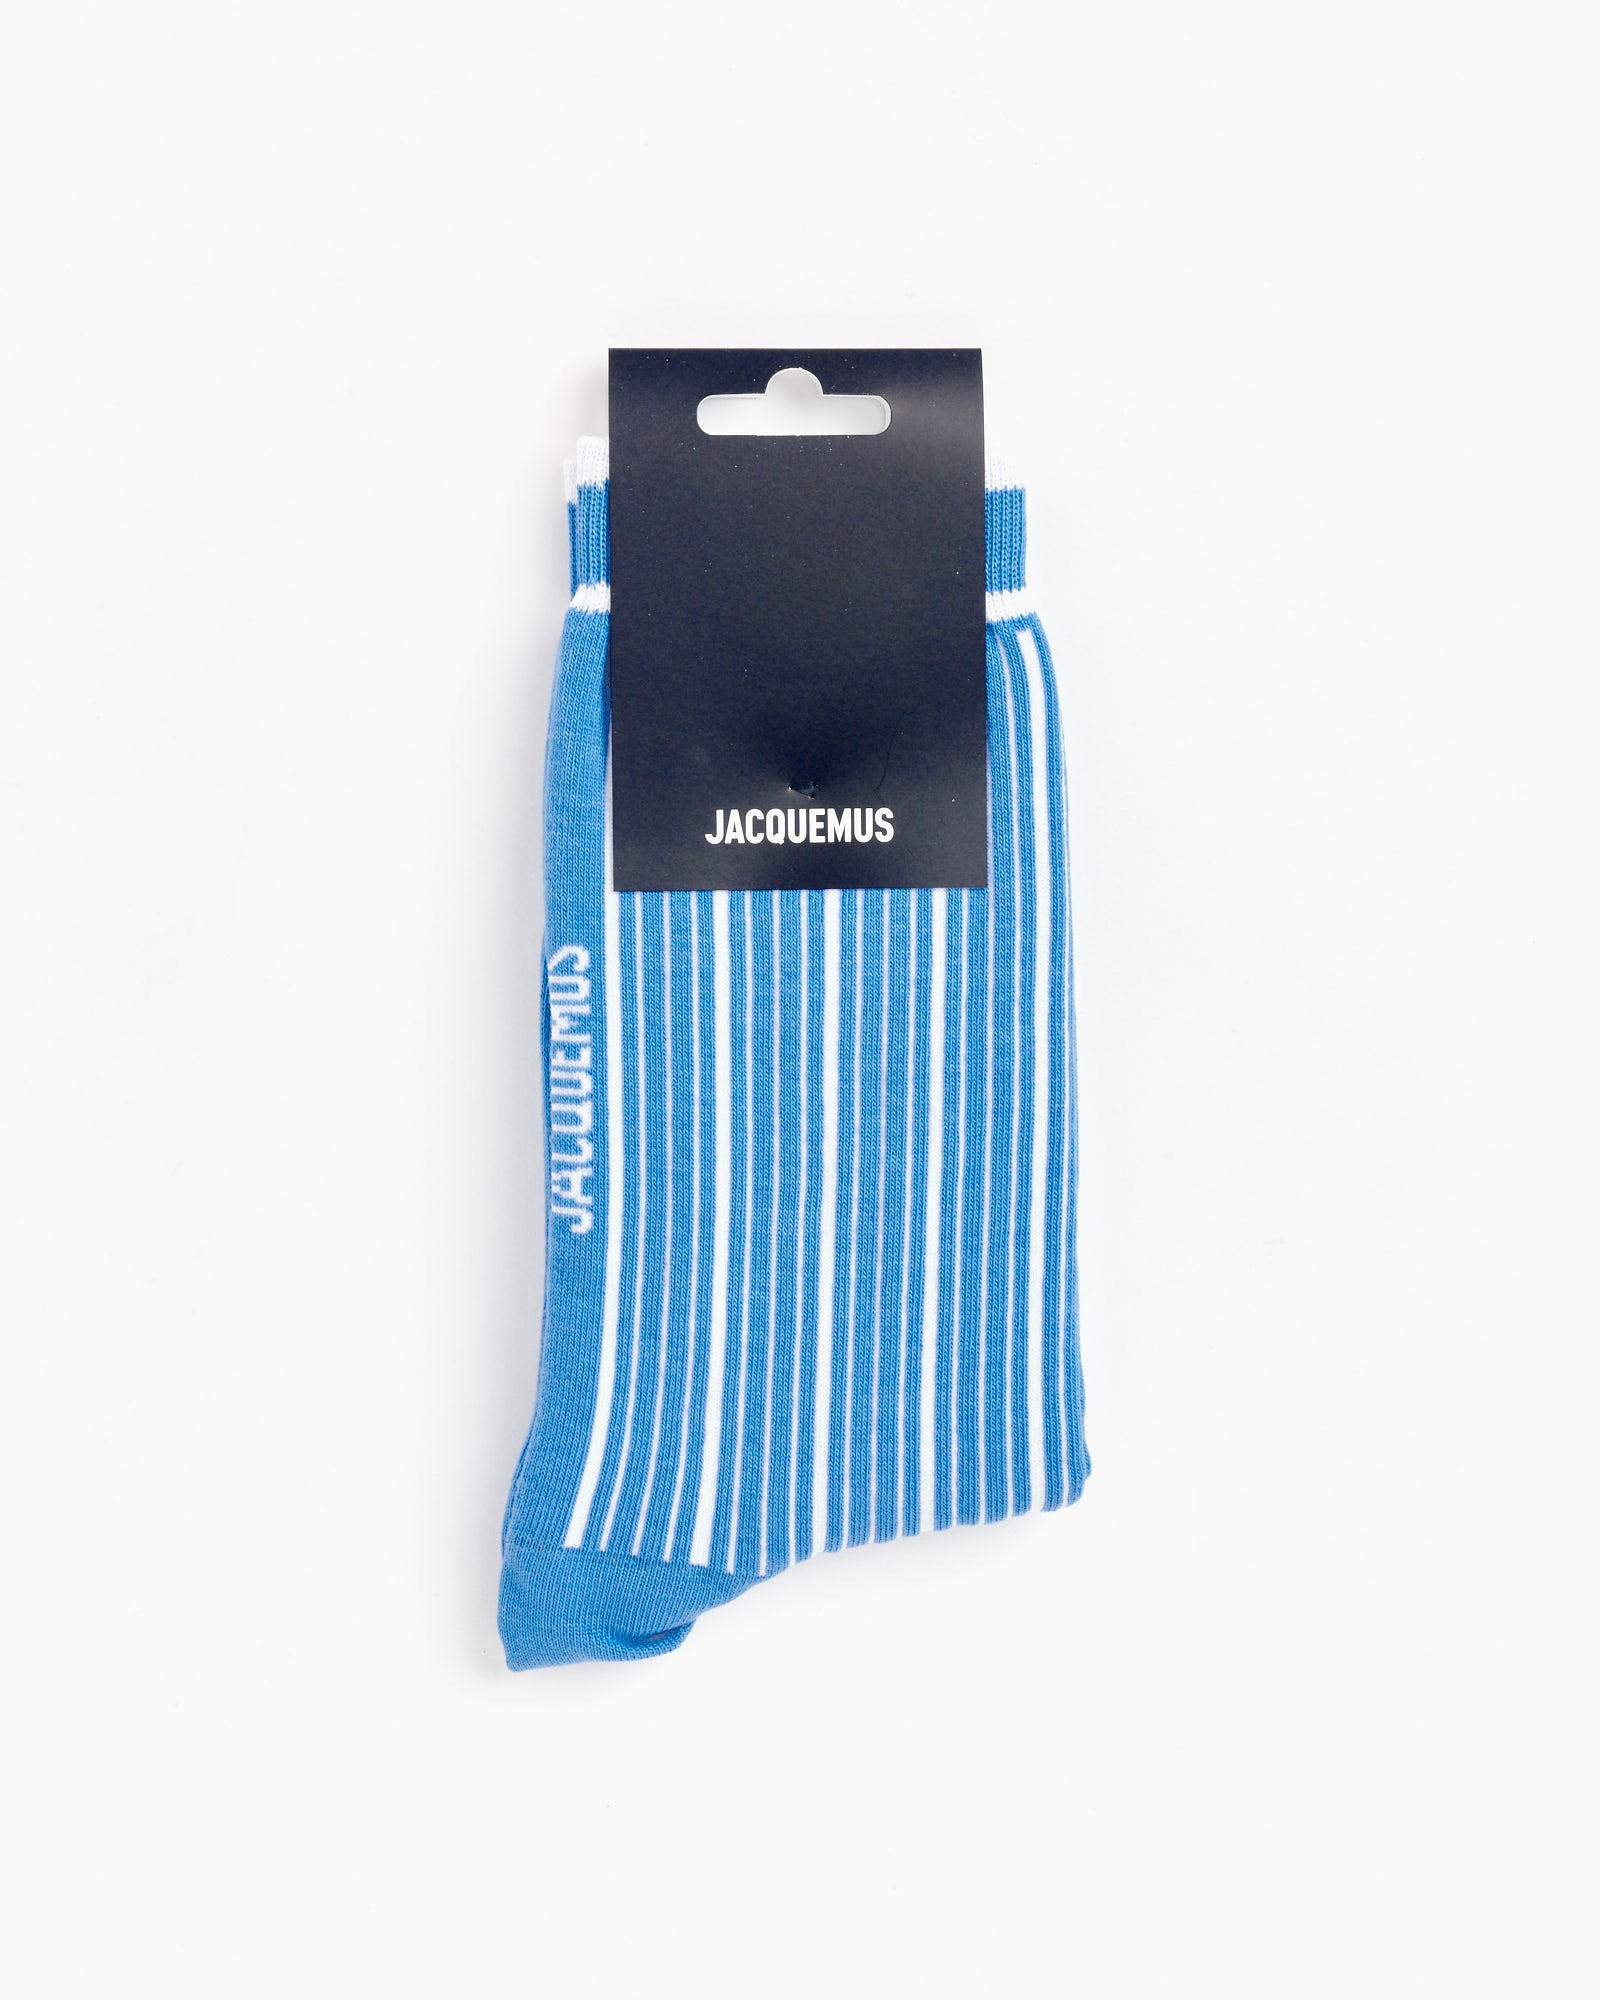 Jacquemus Les Chaussettes Pablo Socks in Blue/White